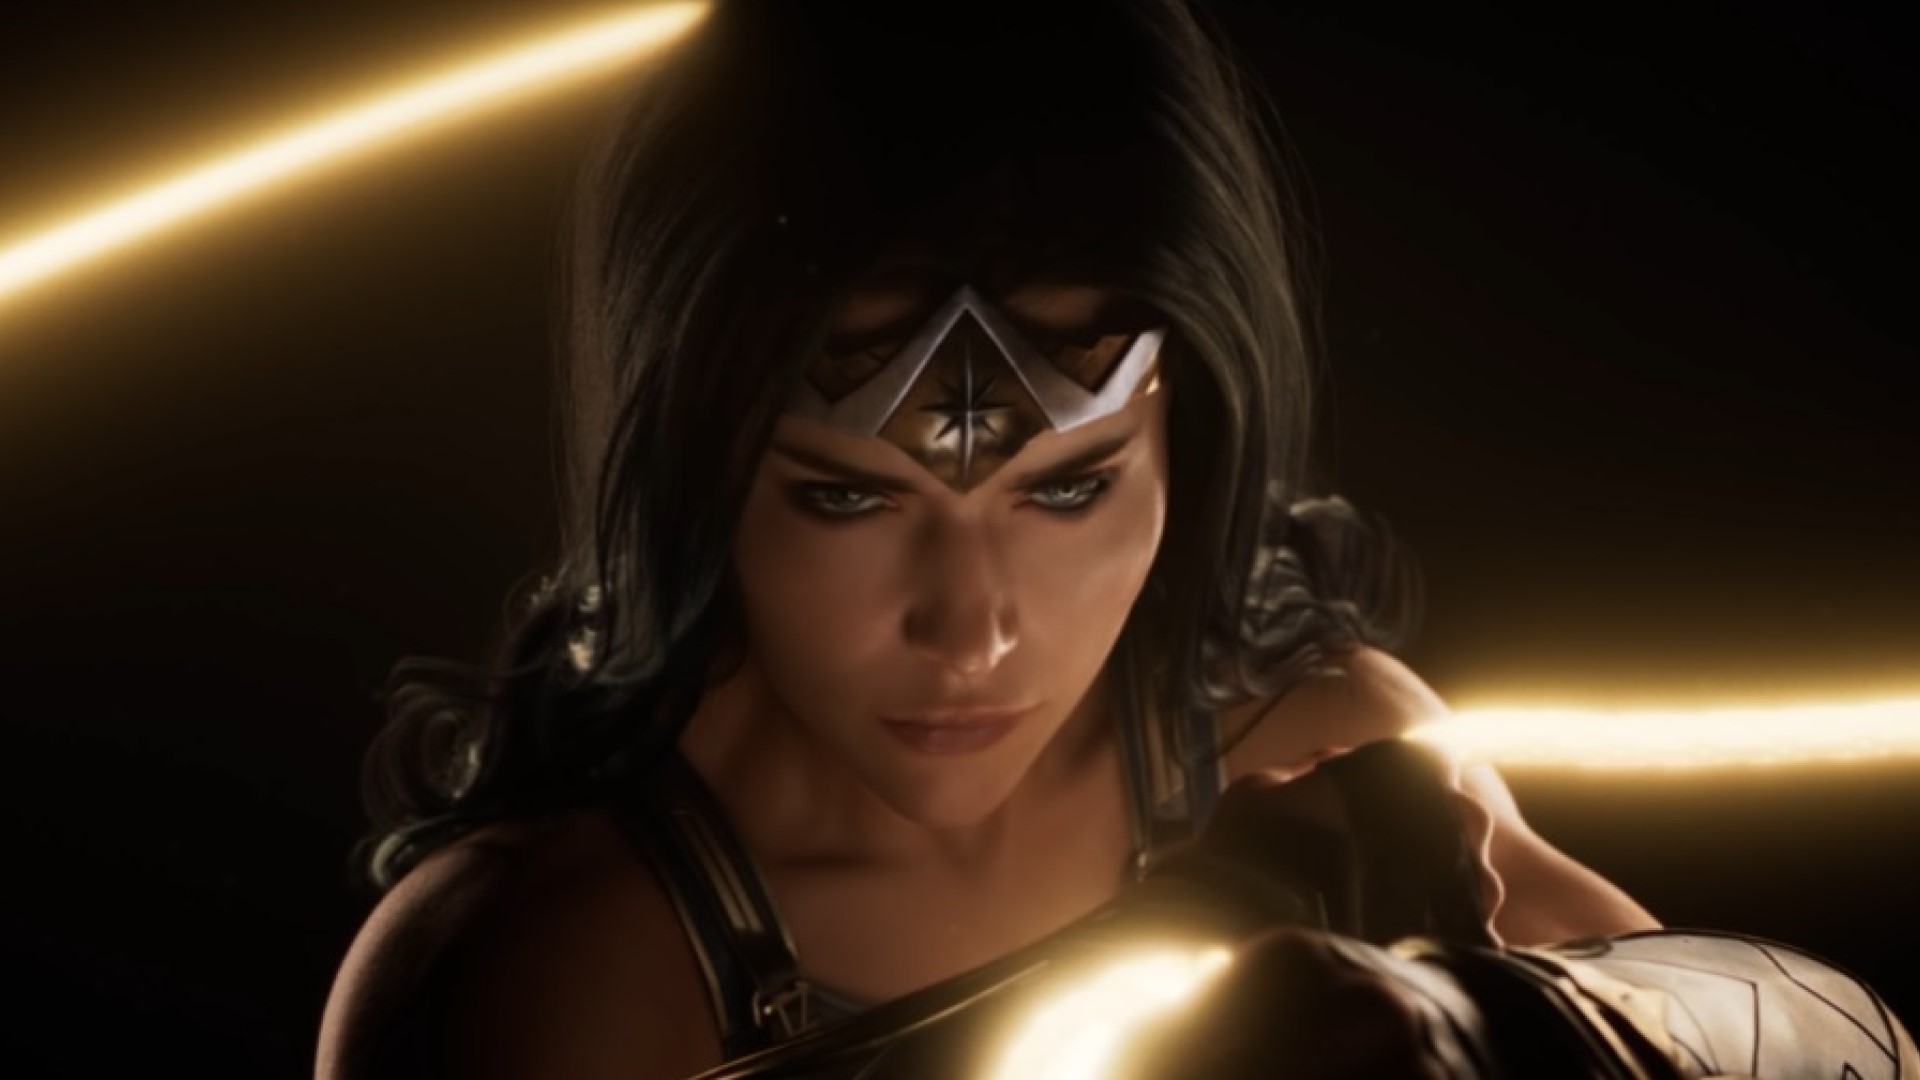 Wonder Woman image